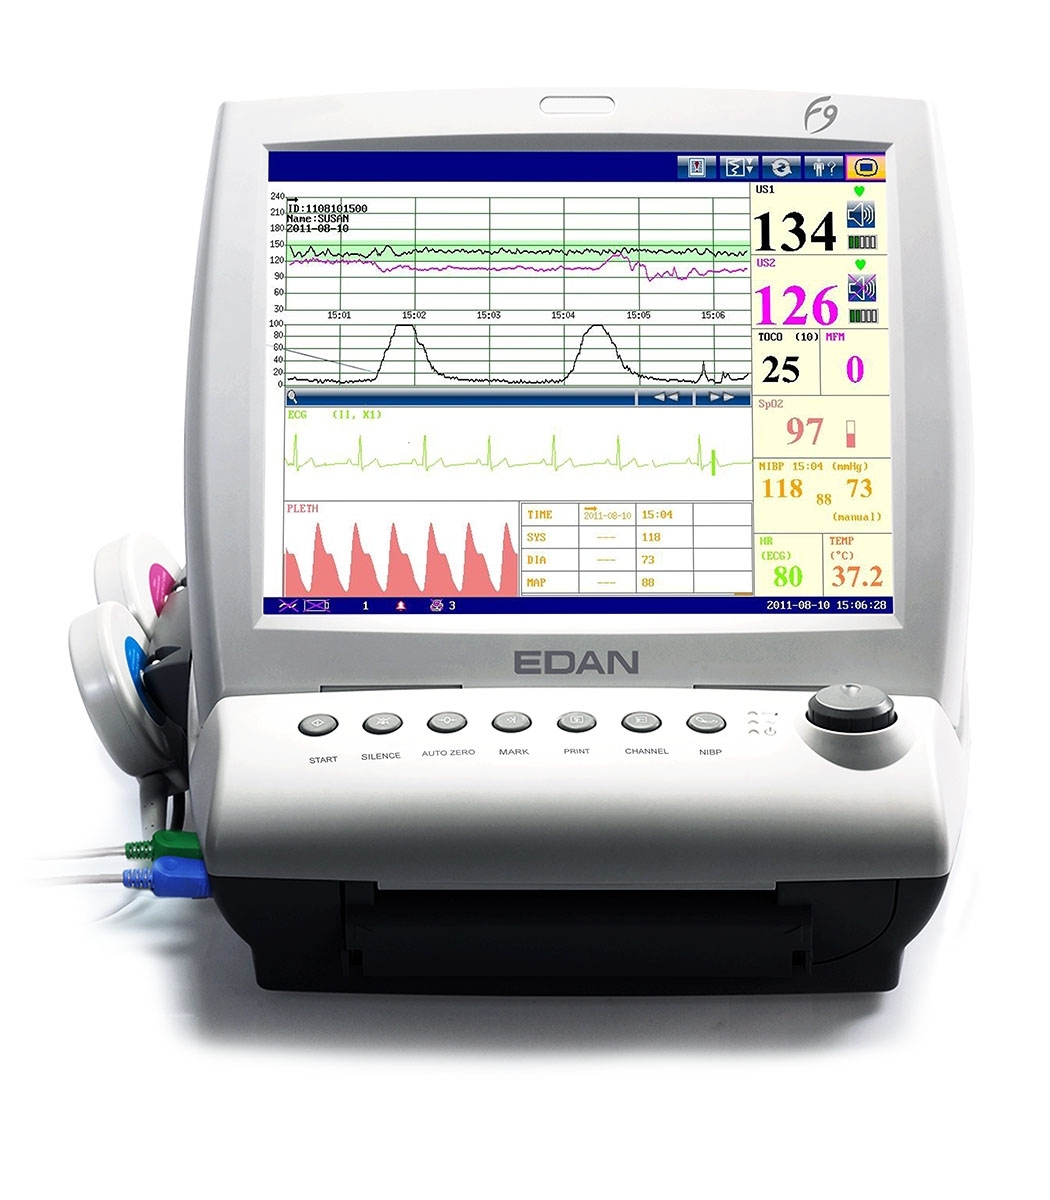 参比制剂,进口原料药,医药原料药 Edan Monitor # F9Express - Edan F9 Express Fetal/Maternal Monitor with DECG/IUP and Touch Screen, Each